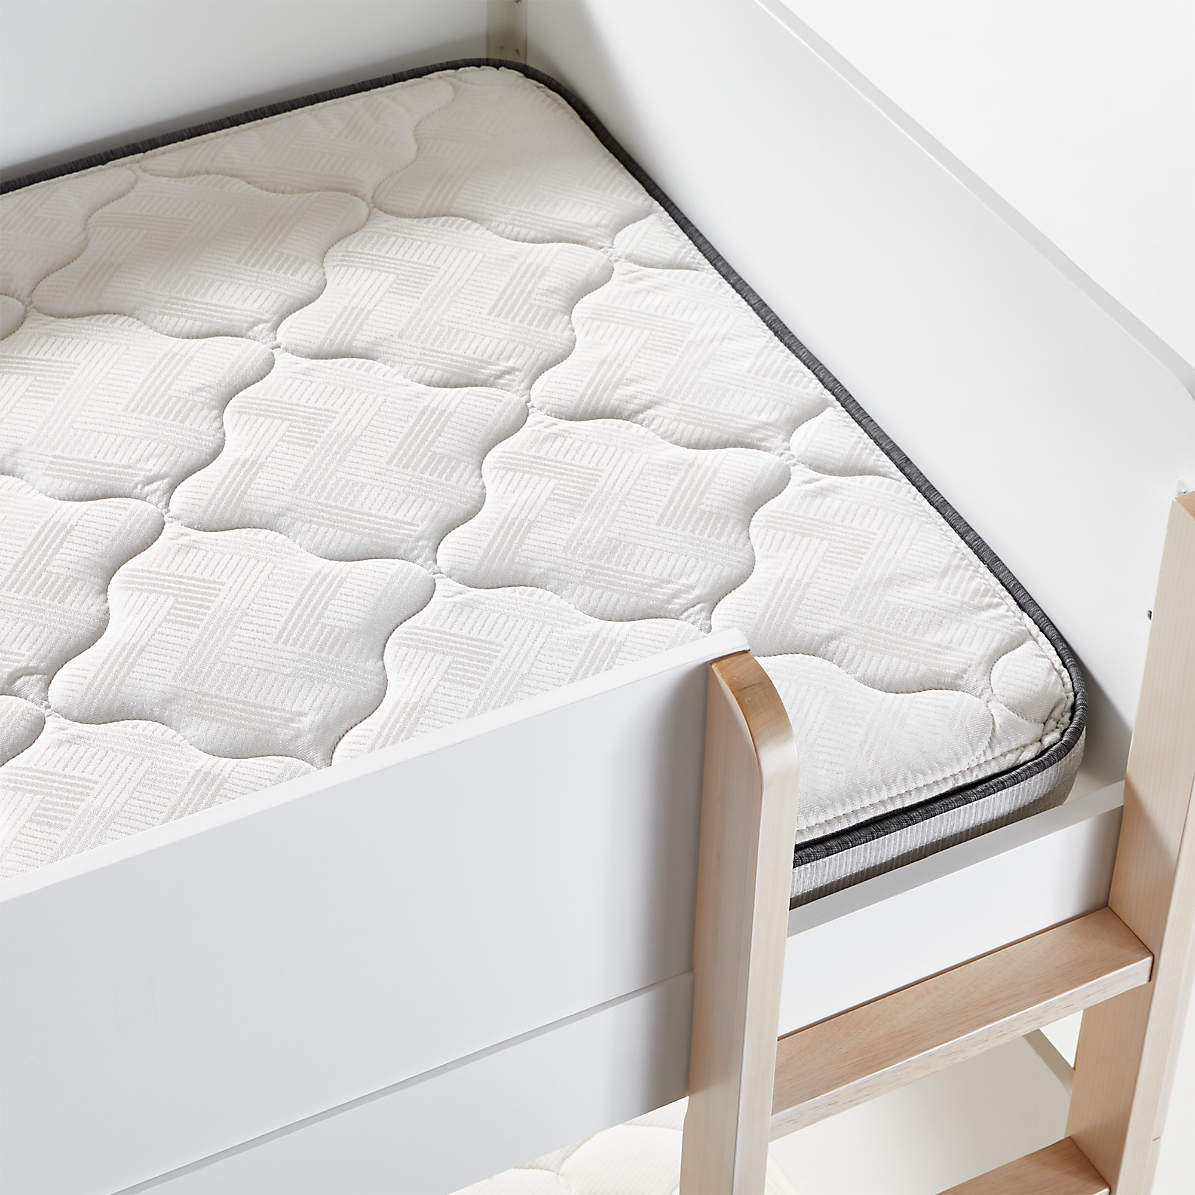 Simmons Beautyrest Foam Twin Bunk, Bunk Bed Mattress Pad